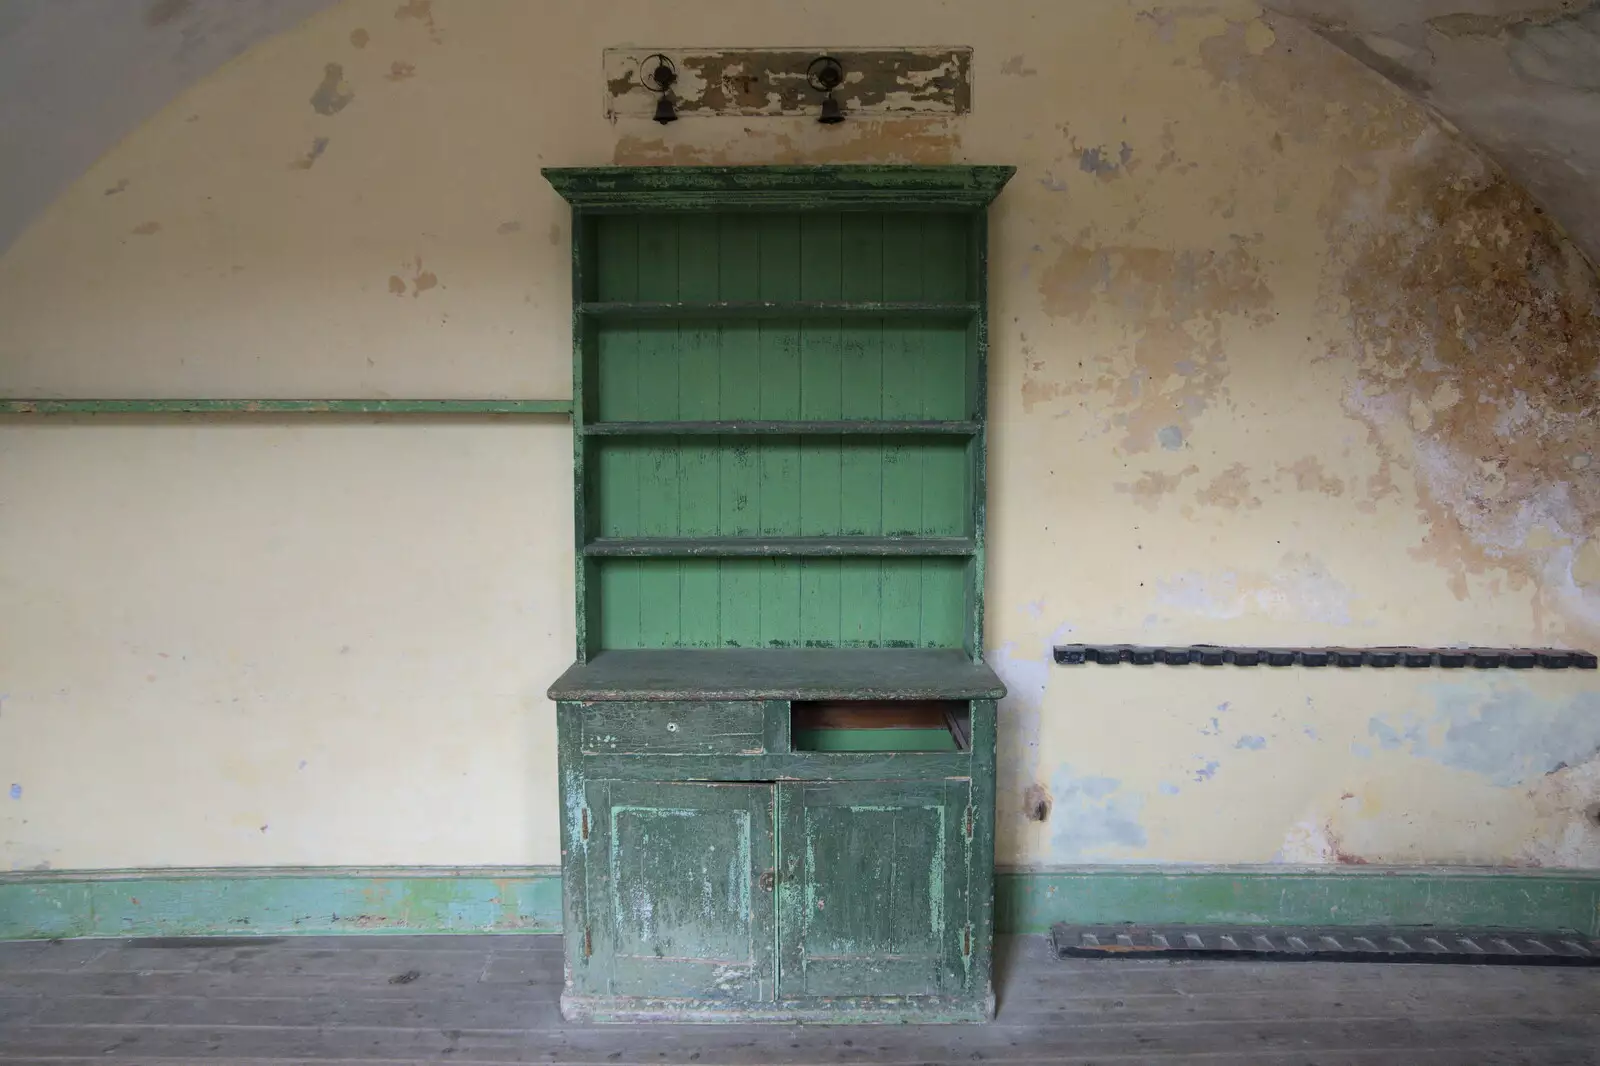 A green Welsh Dresser, from A Trip to Landguard Fort, Felixstowe, Suffolk - 16th October 2022